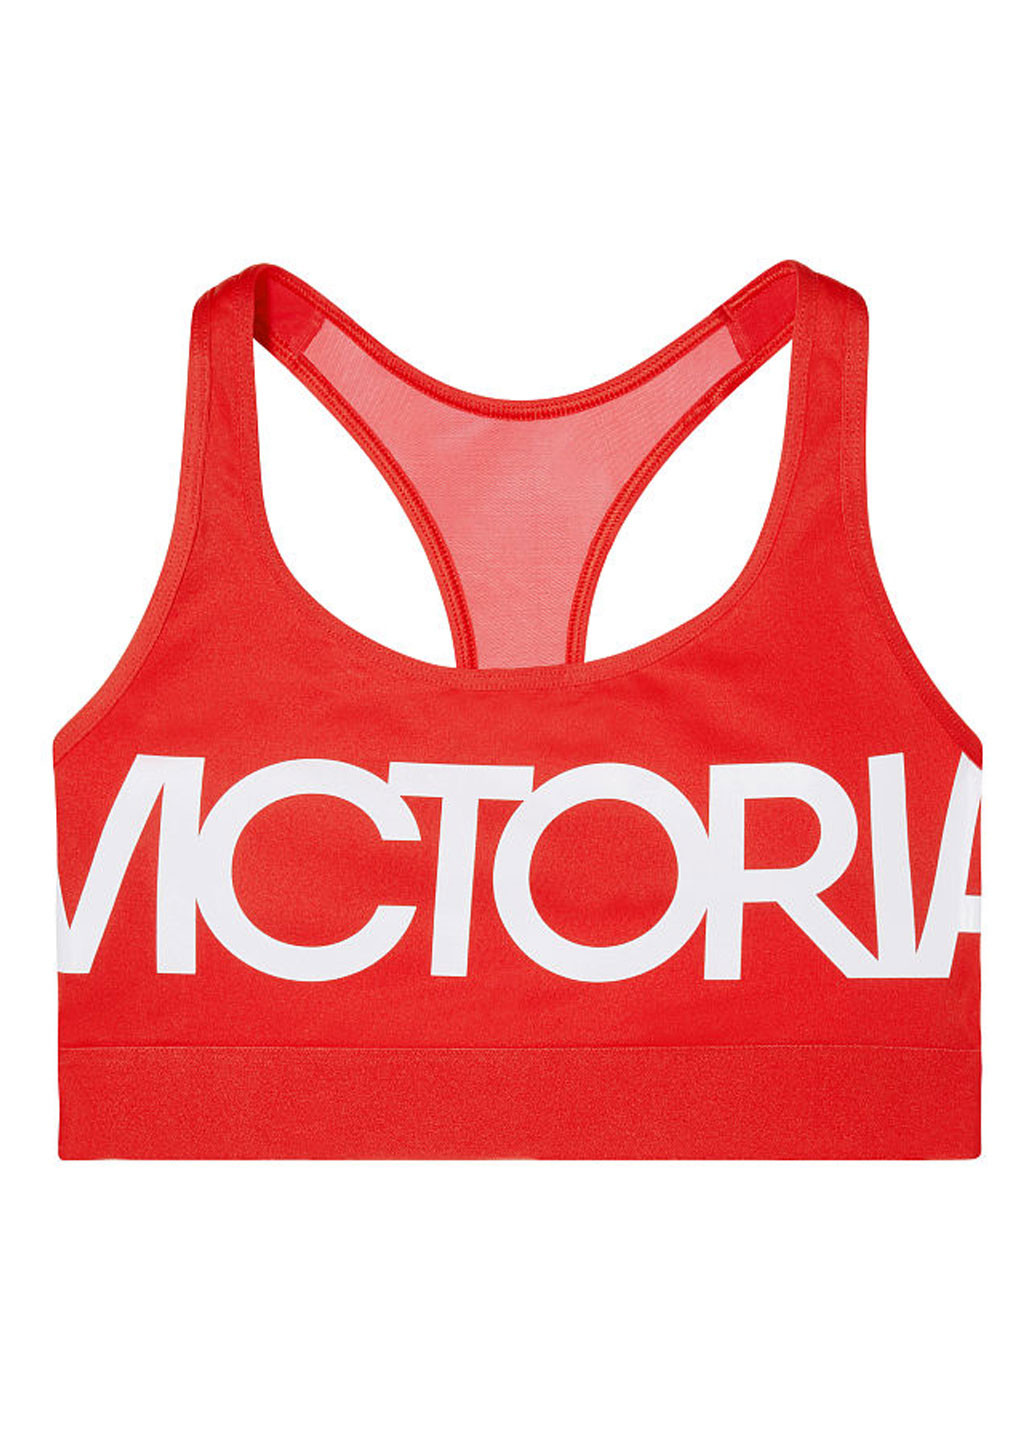 Спорт бра Victoria's Secret надпись красный спортивный